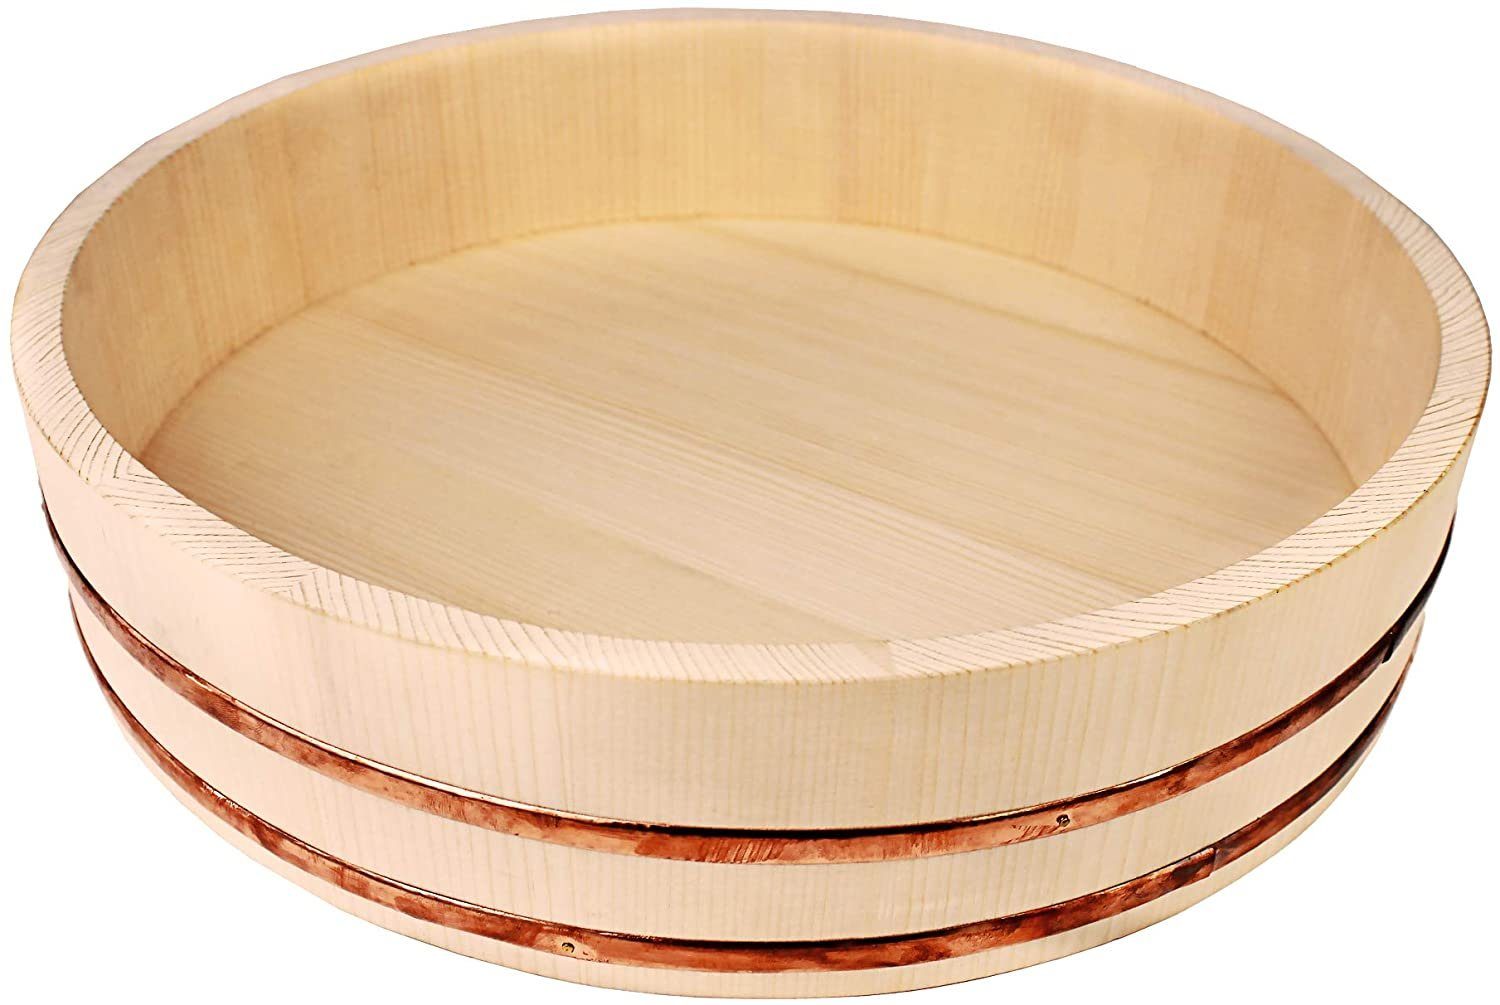 Reishunger Schüssel - Hangiri Holzschüssel für Sushi Reis in 4 Größen von 30 cm bis 60 cm Durchmesser, Kiefernholz mit Kupferstreifen